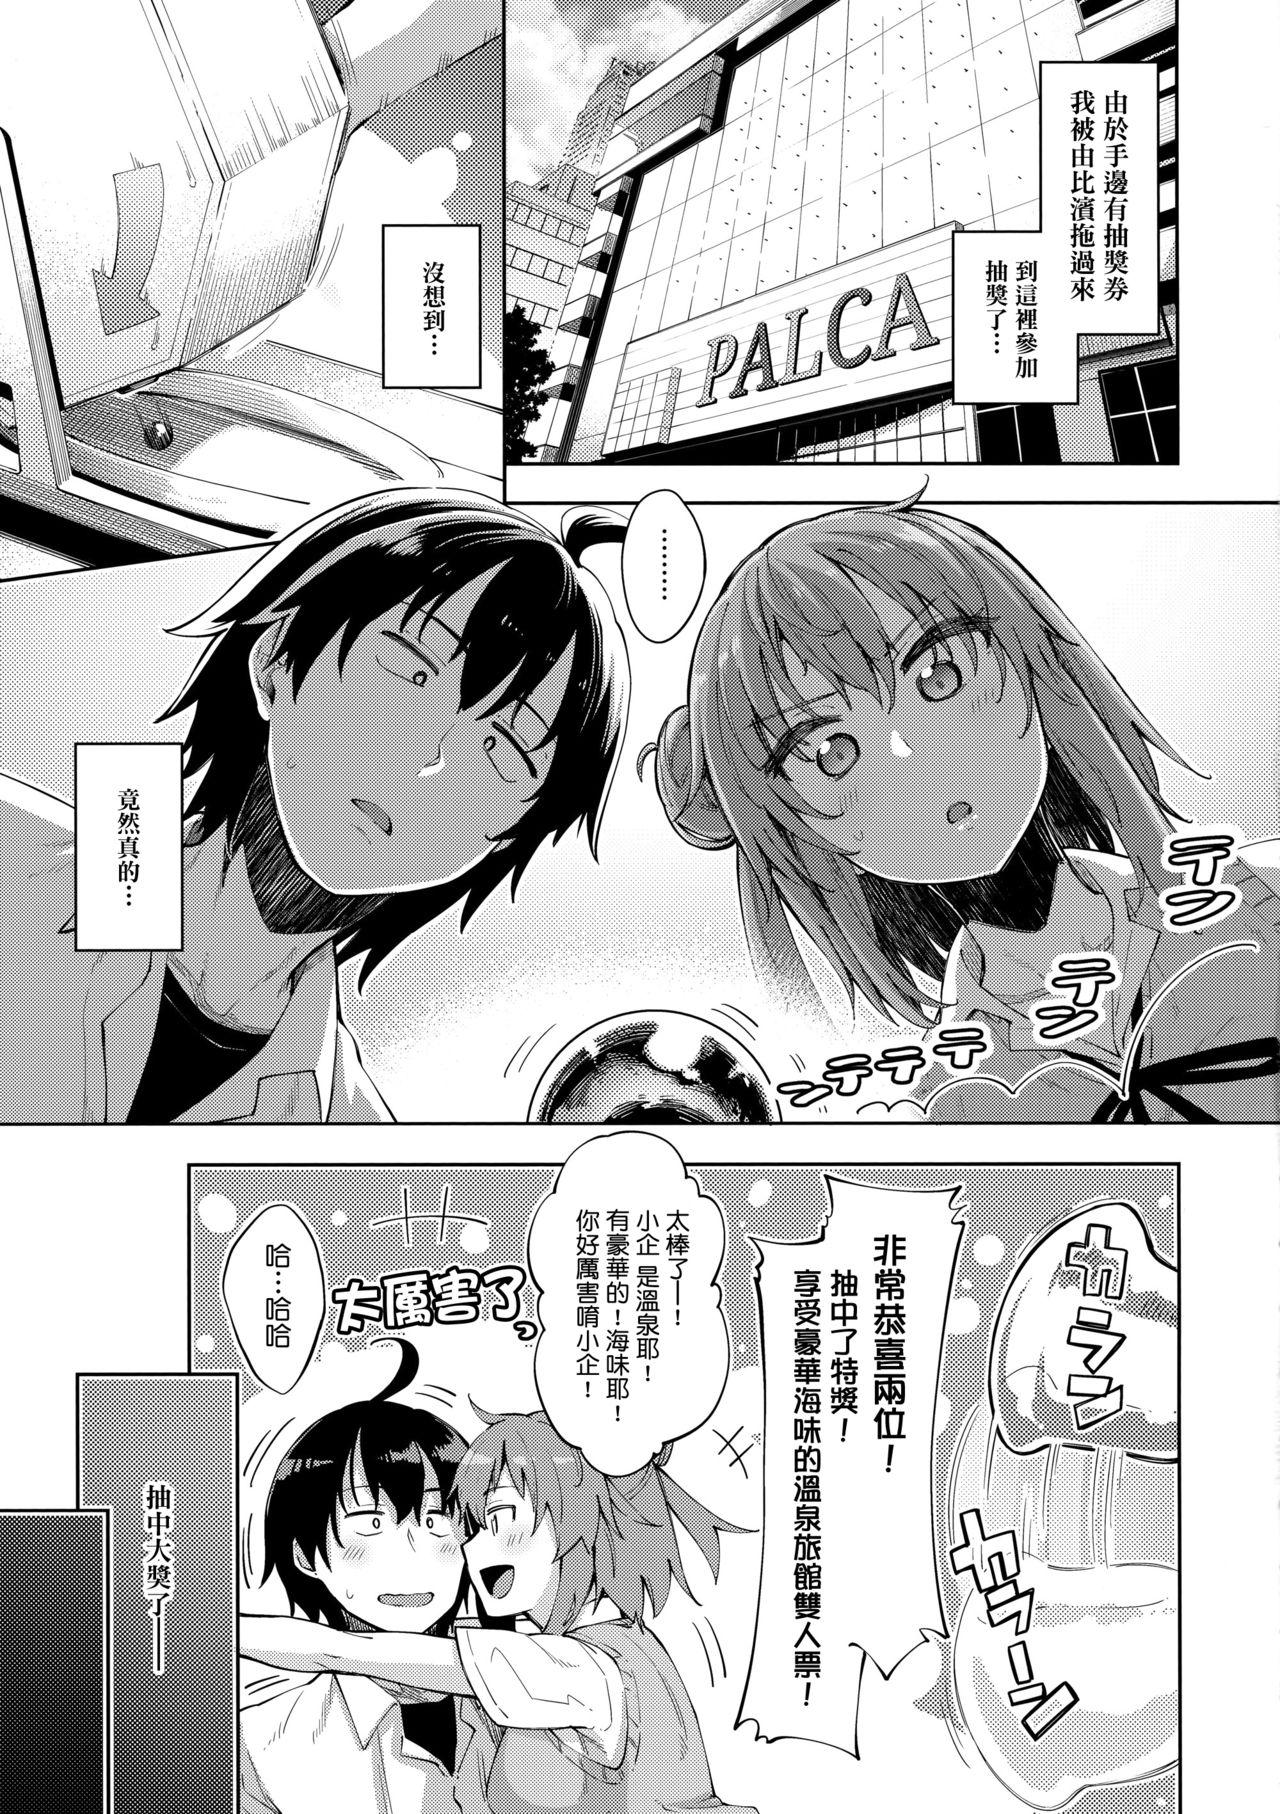 Suck Cock LOVE STORY #05 - Yahari ore no seishun love come wa machigatteiru Sex Massage - Page 5